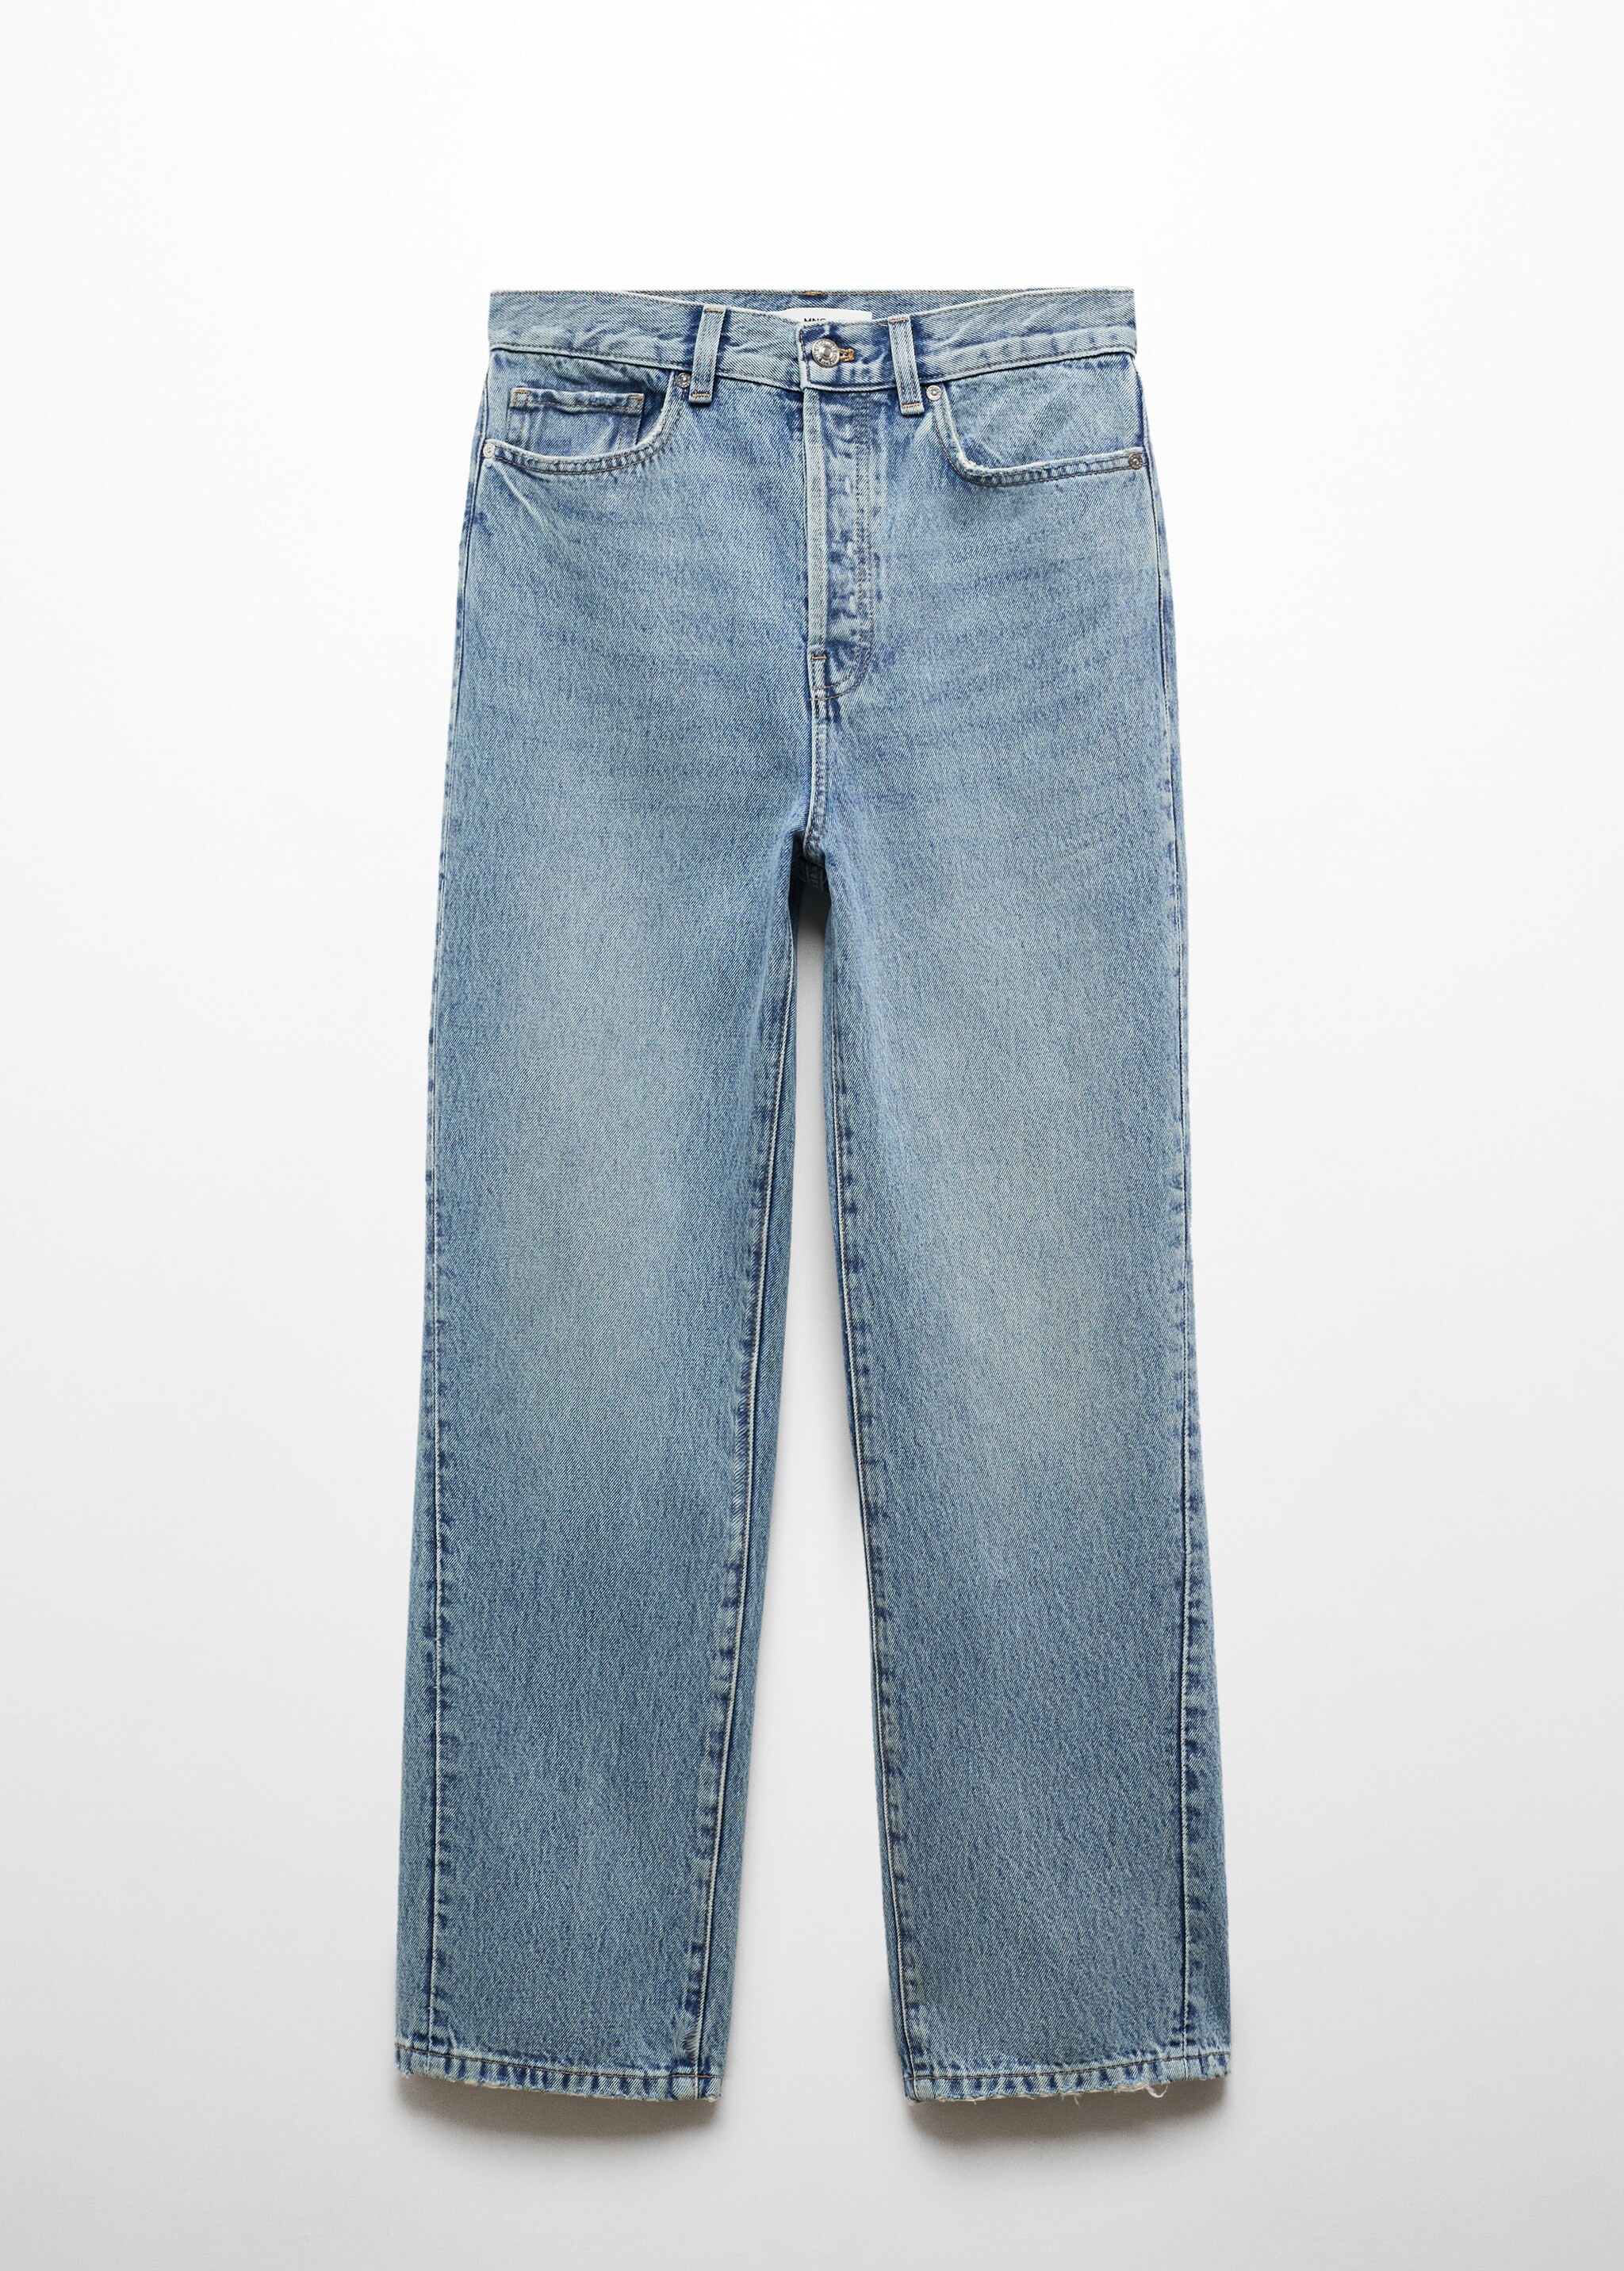 Jeans rectos costuras adelantadas - Artículo sin modelo